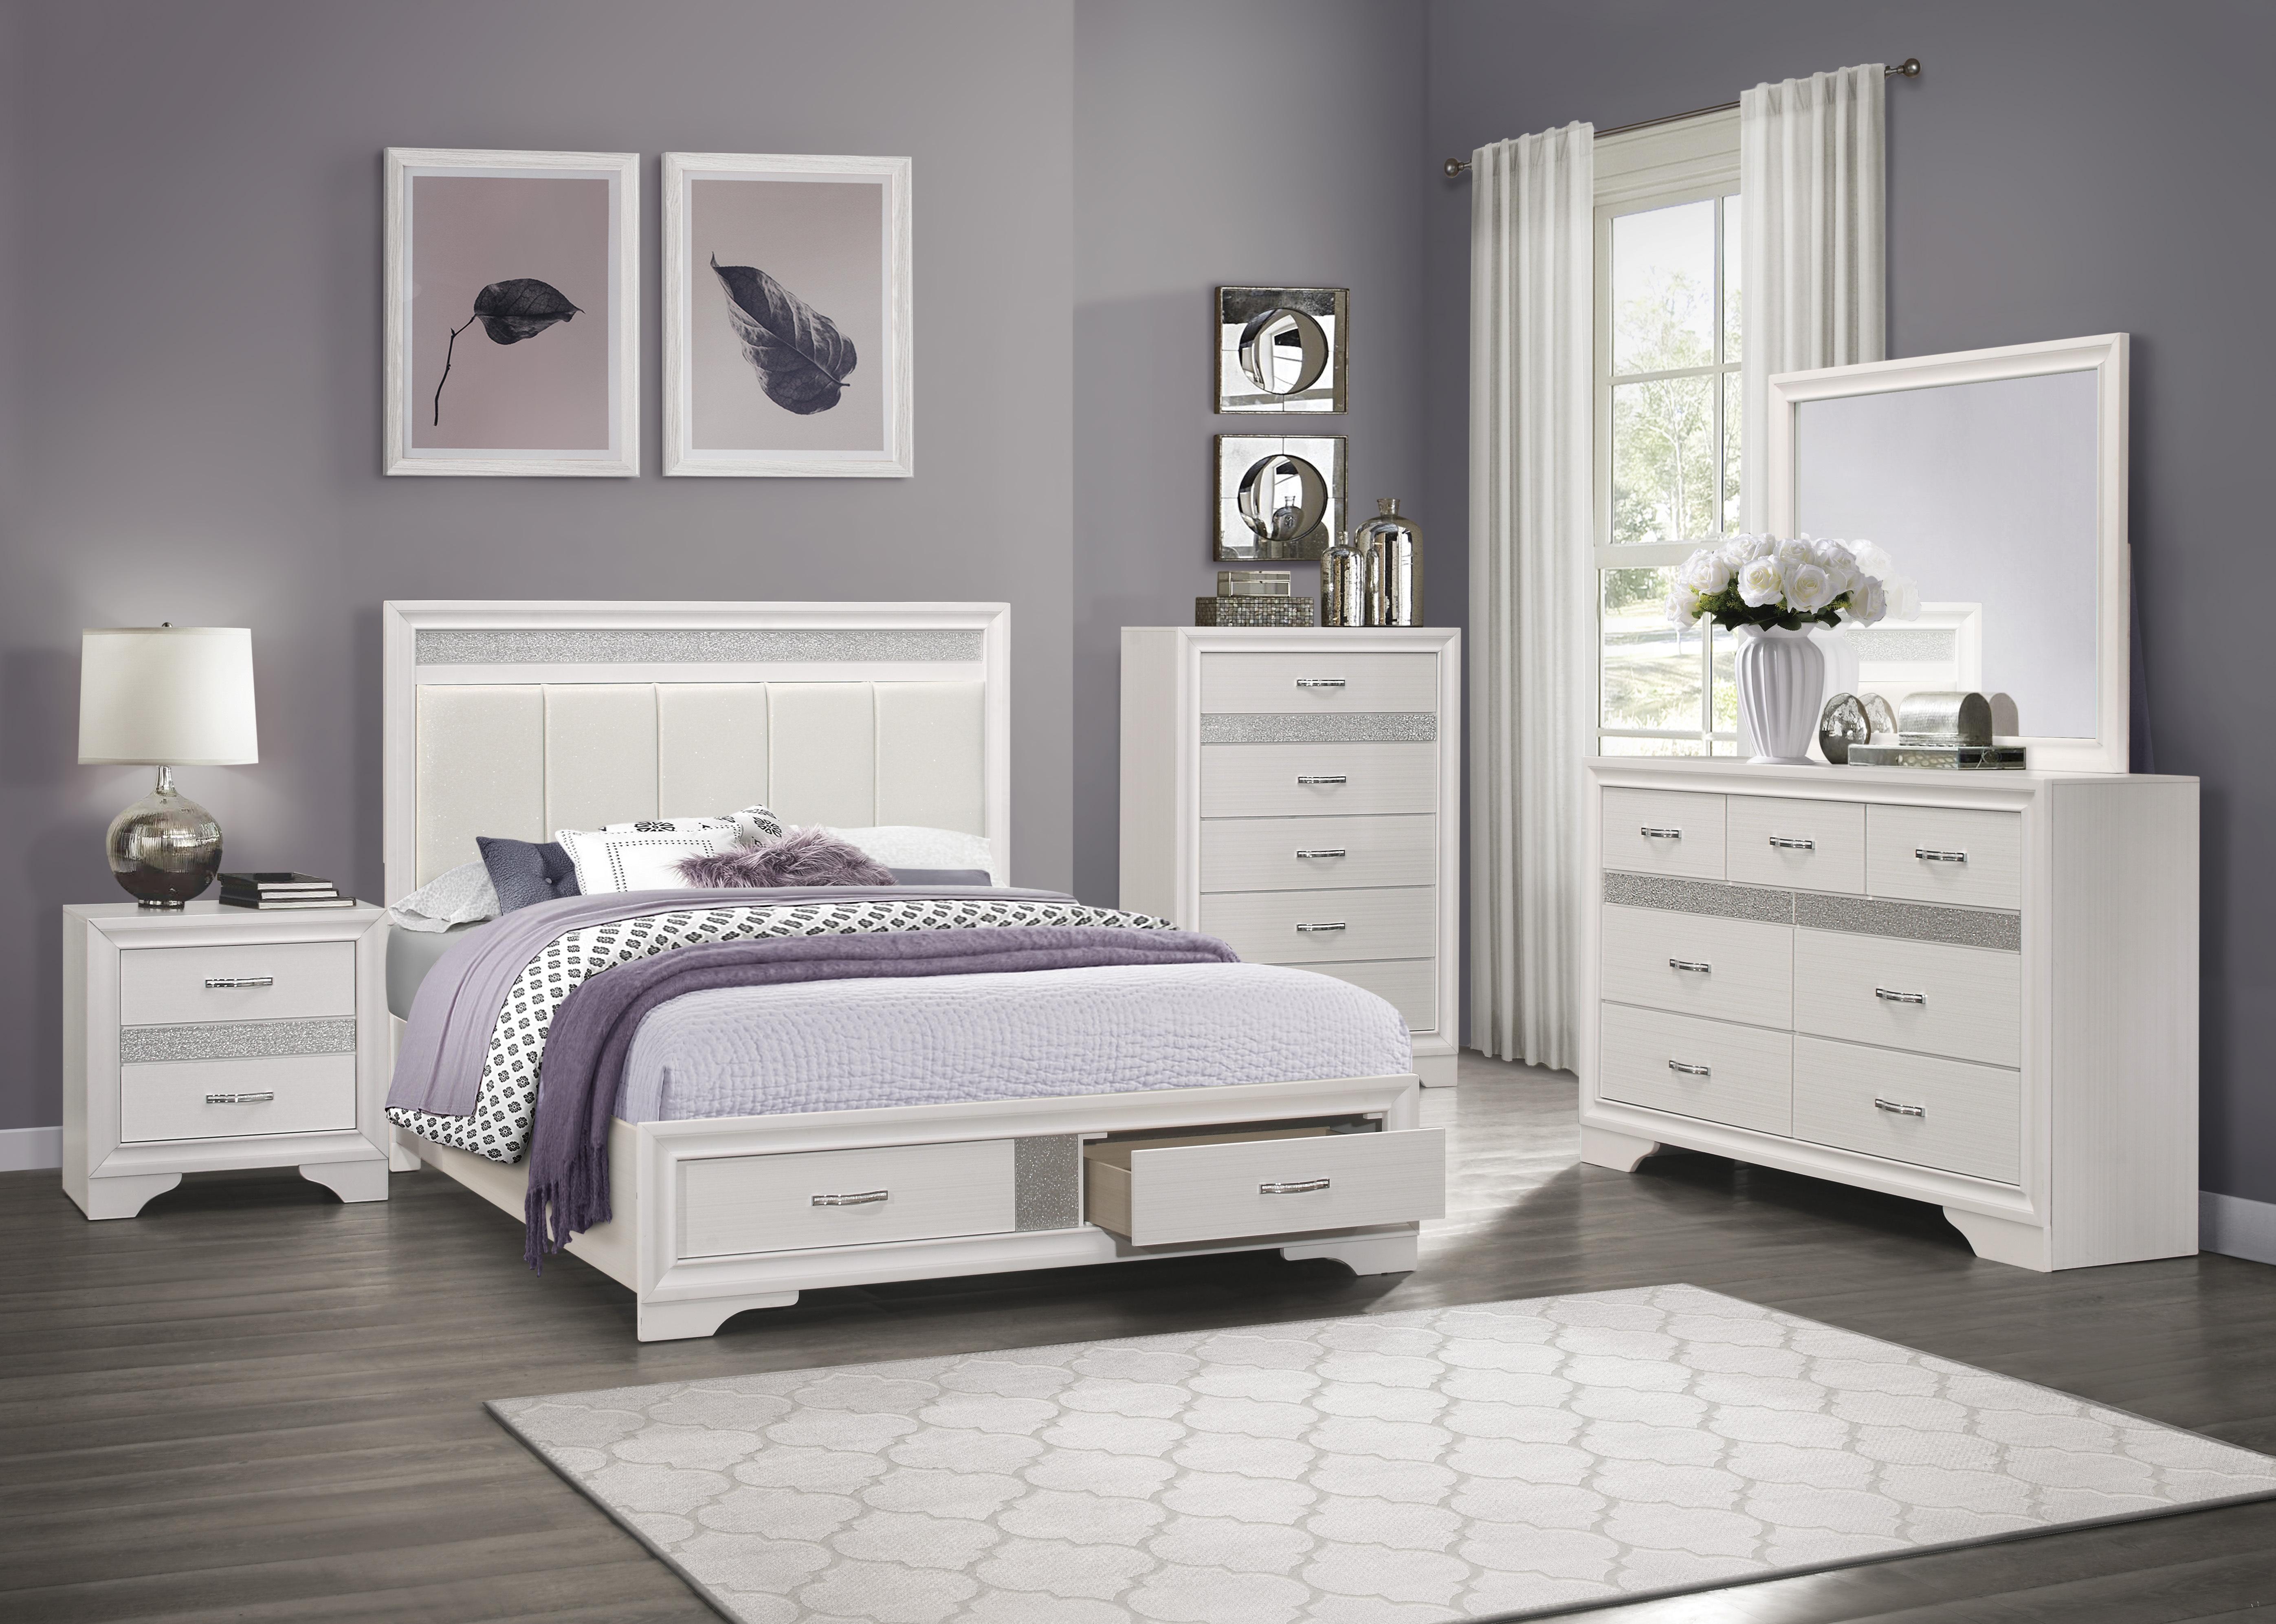 

    
Glam White & Silver Glitter Wood King Bedroom Set 5pcs Homelegance 1505WK-1EK* Luster
